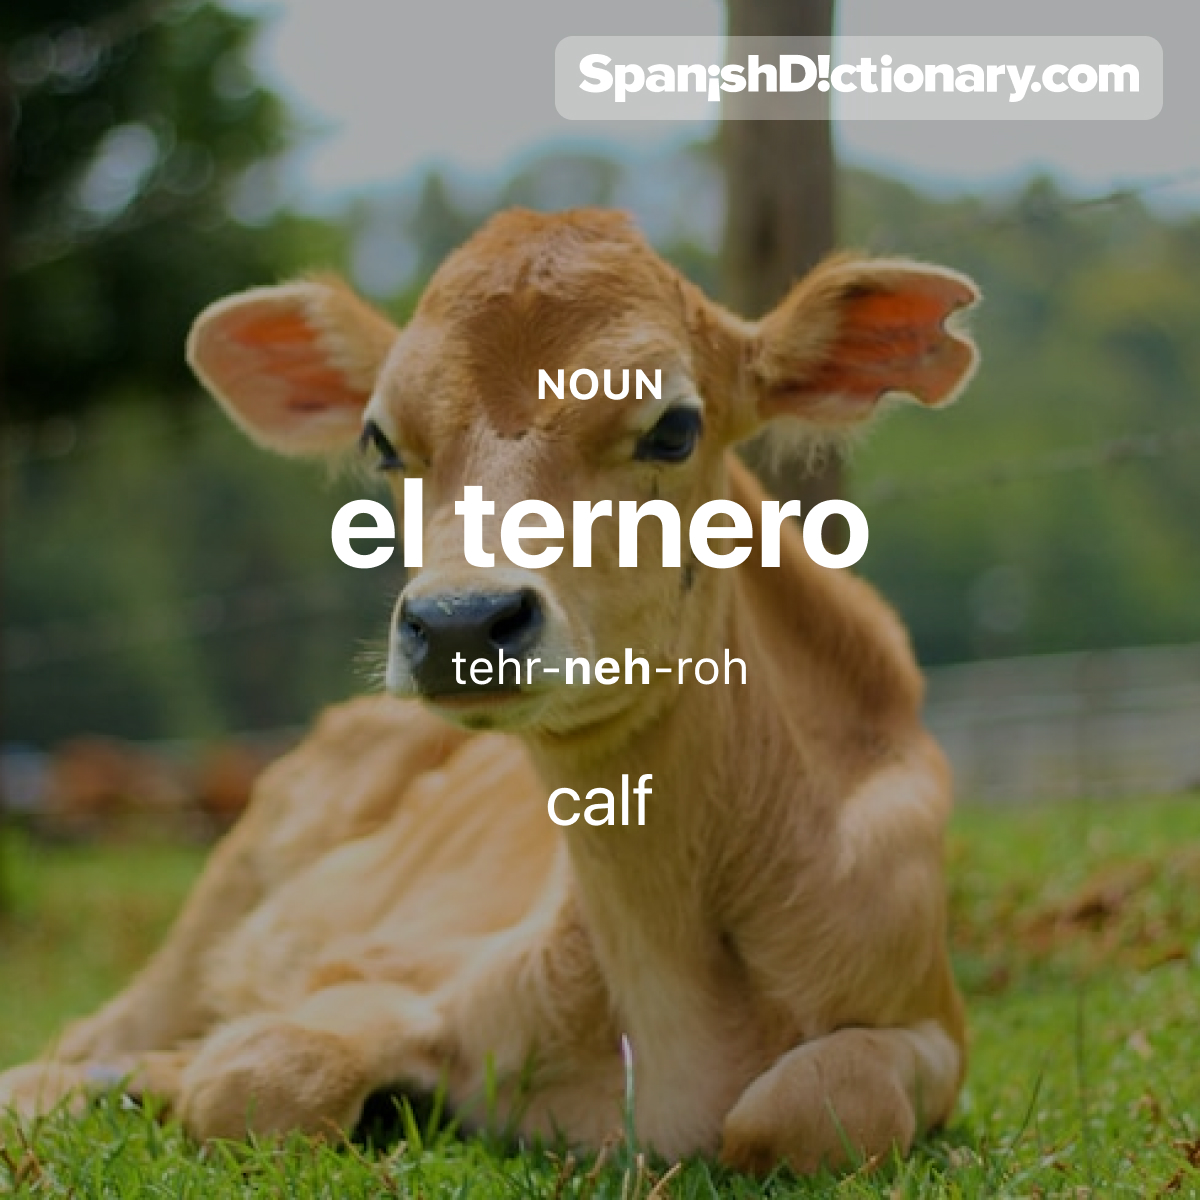 Today's #WordOfTheDay is 'ternero.' 🐄 For example: El ternero pasta en el campo. - The calf grazes in the field.
.
.
.
#EstudiaEspañol #StudySpanish #AprendeEspañol #LearnSpanish #Español #Spanish #LearningSpanish #PalabraDelDia #ternero #calf